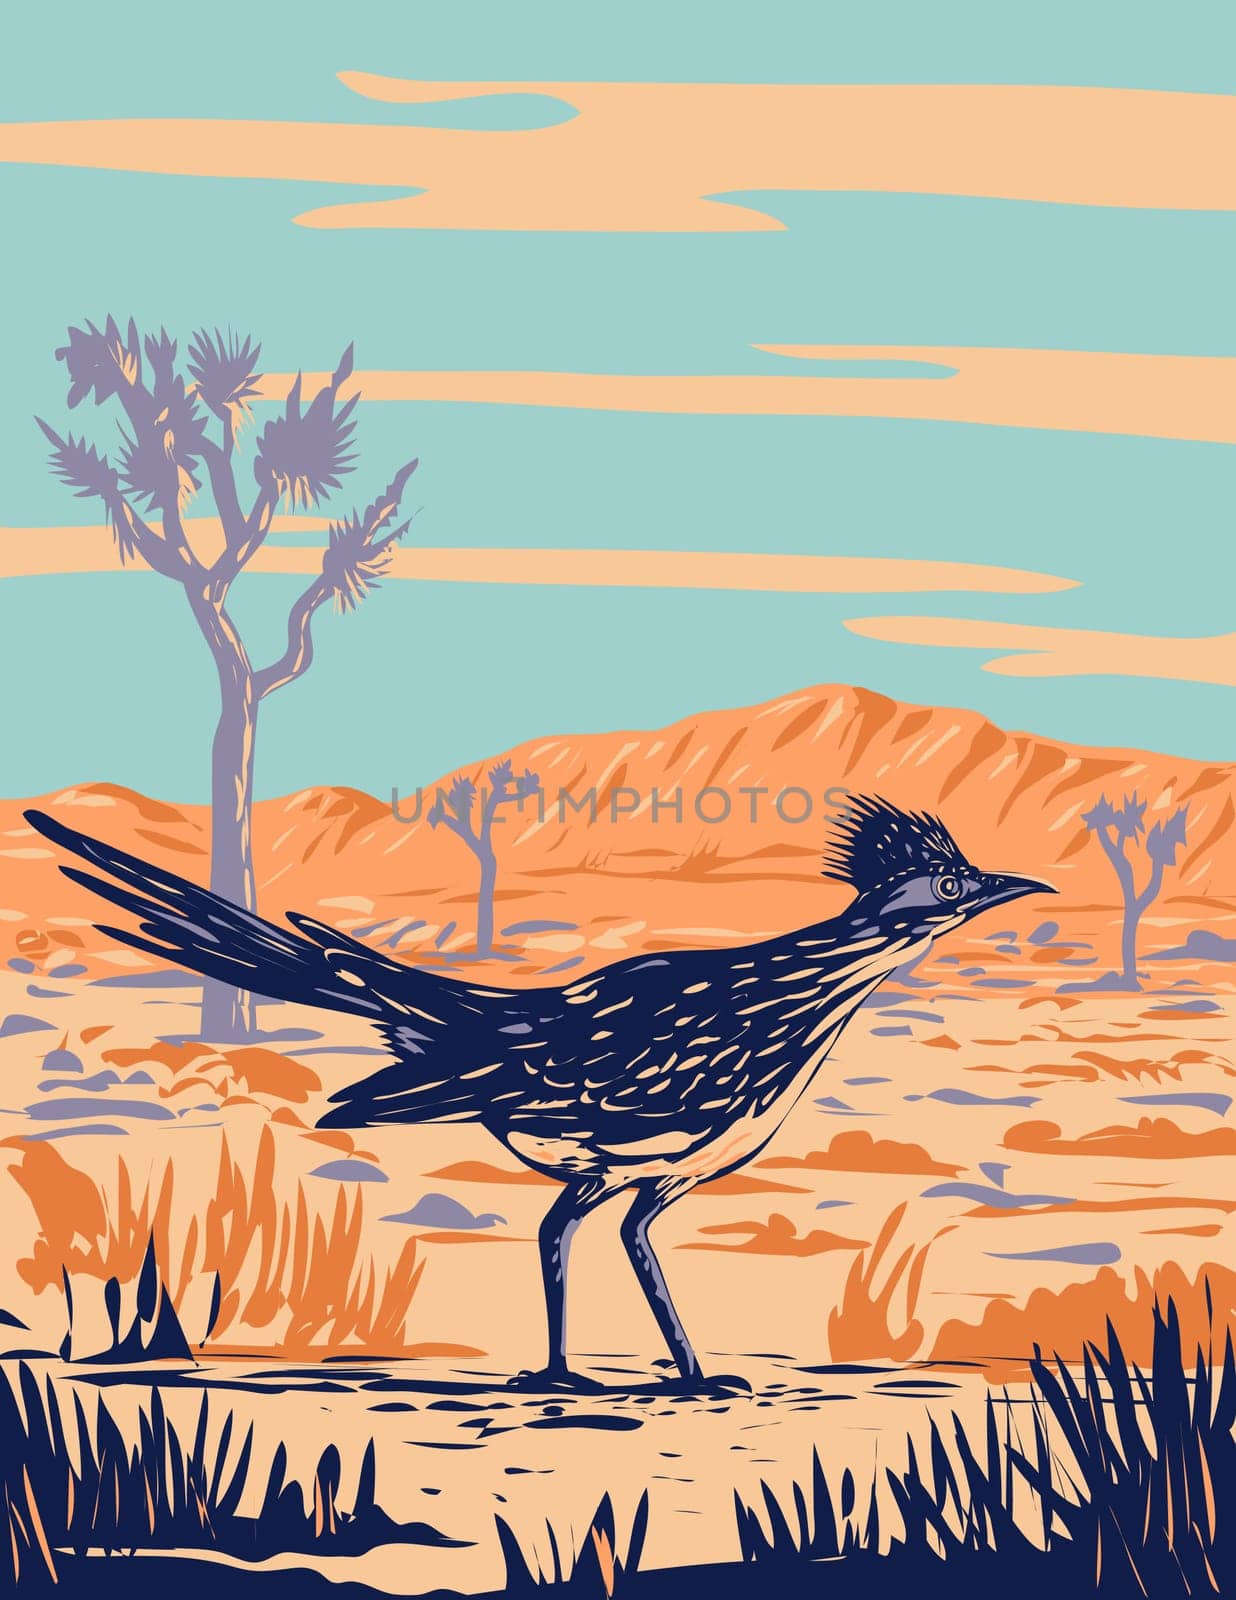 Roadrunner Chaparral Bird in Joshua Tree National Park Mojave Desert California WPA Poster Art by patrimonio